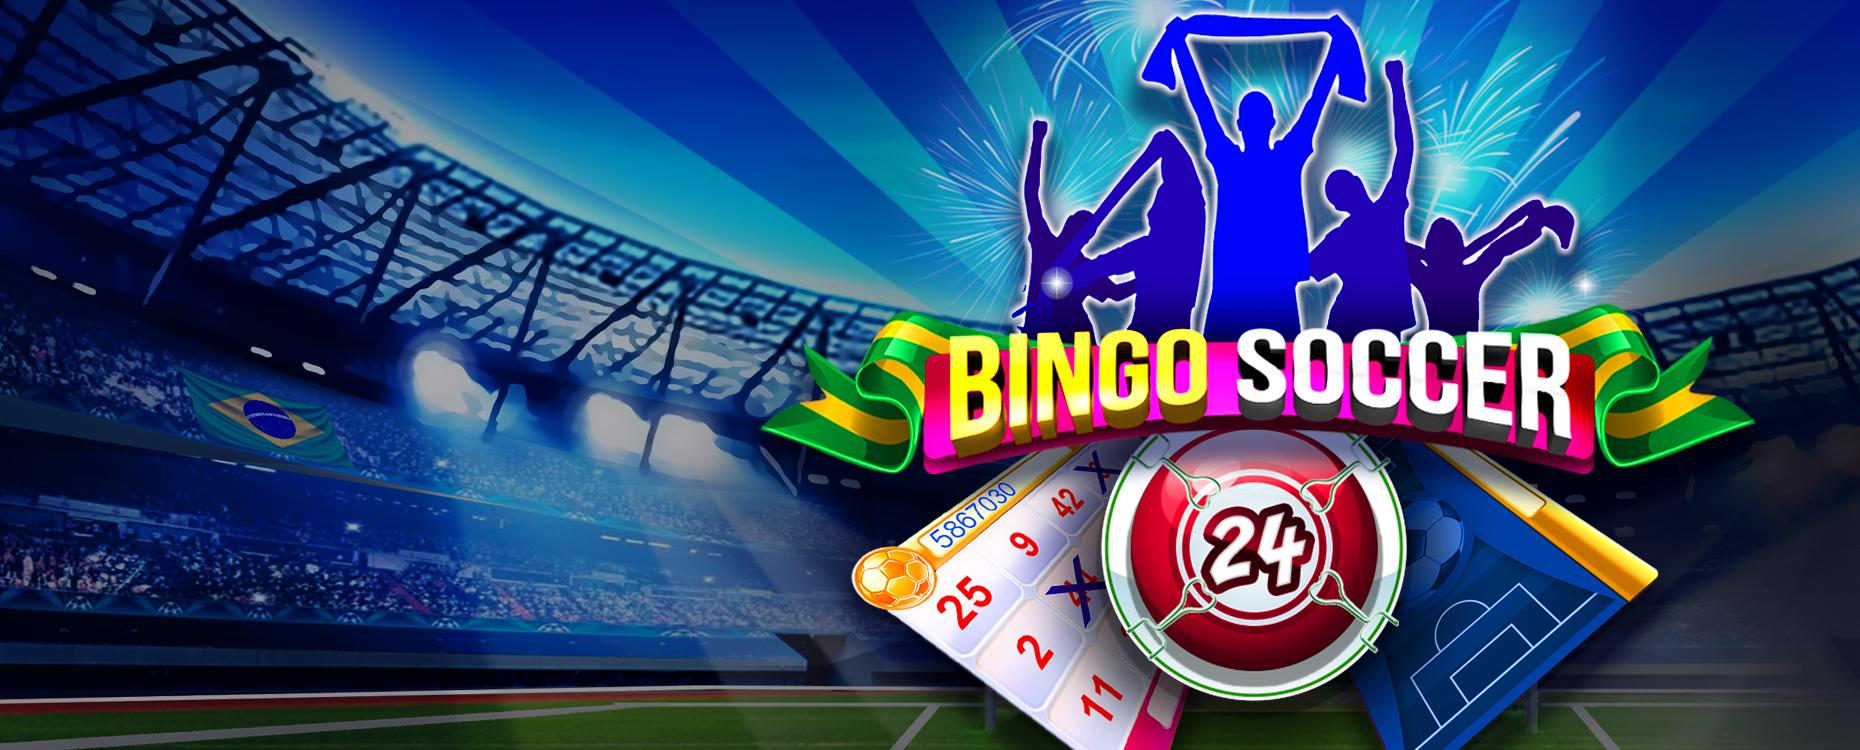 Bingo Soccer | Промо-материалы | Игровой автомат онлайн